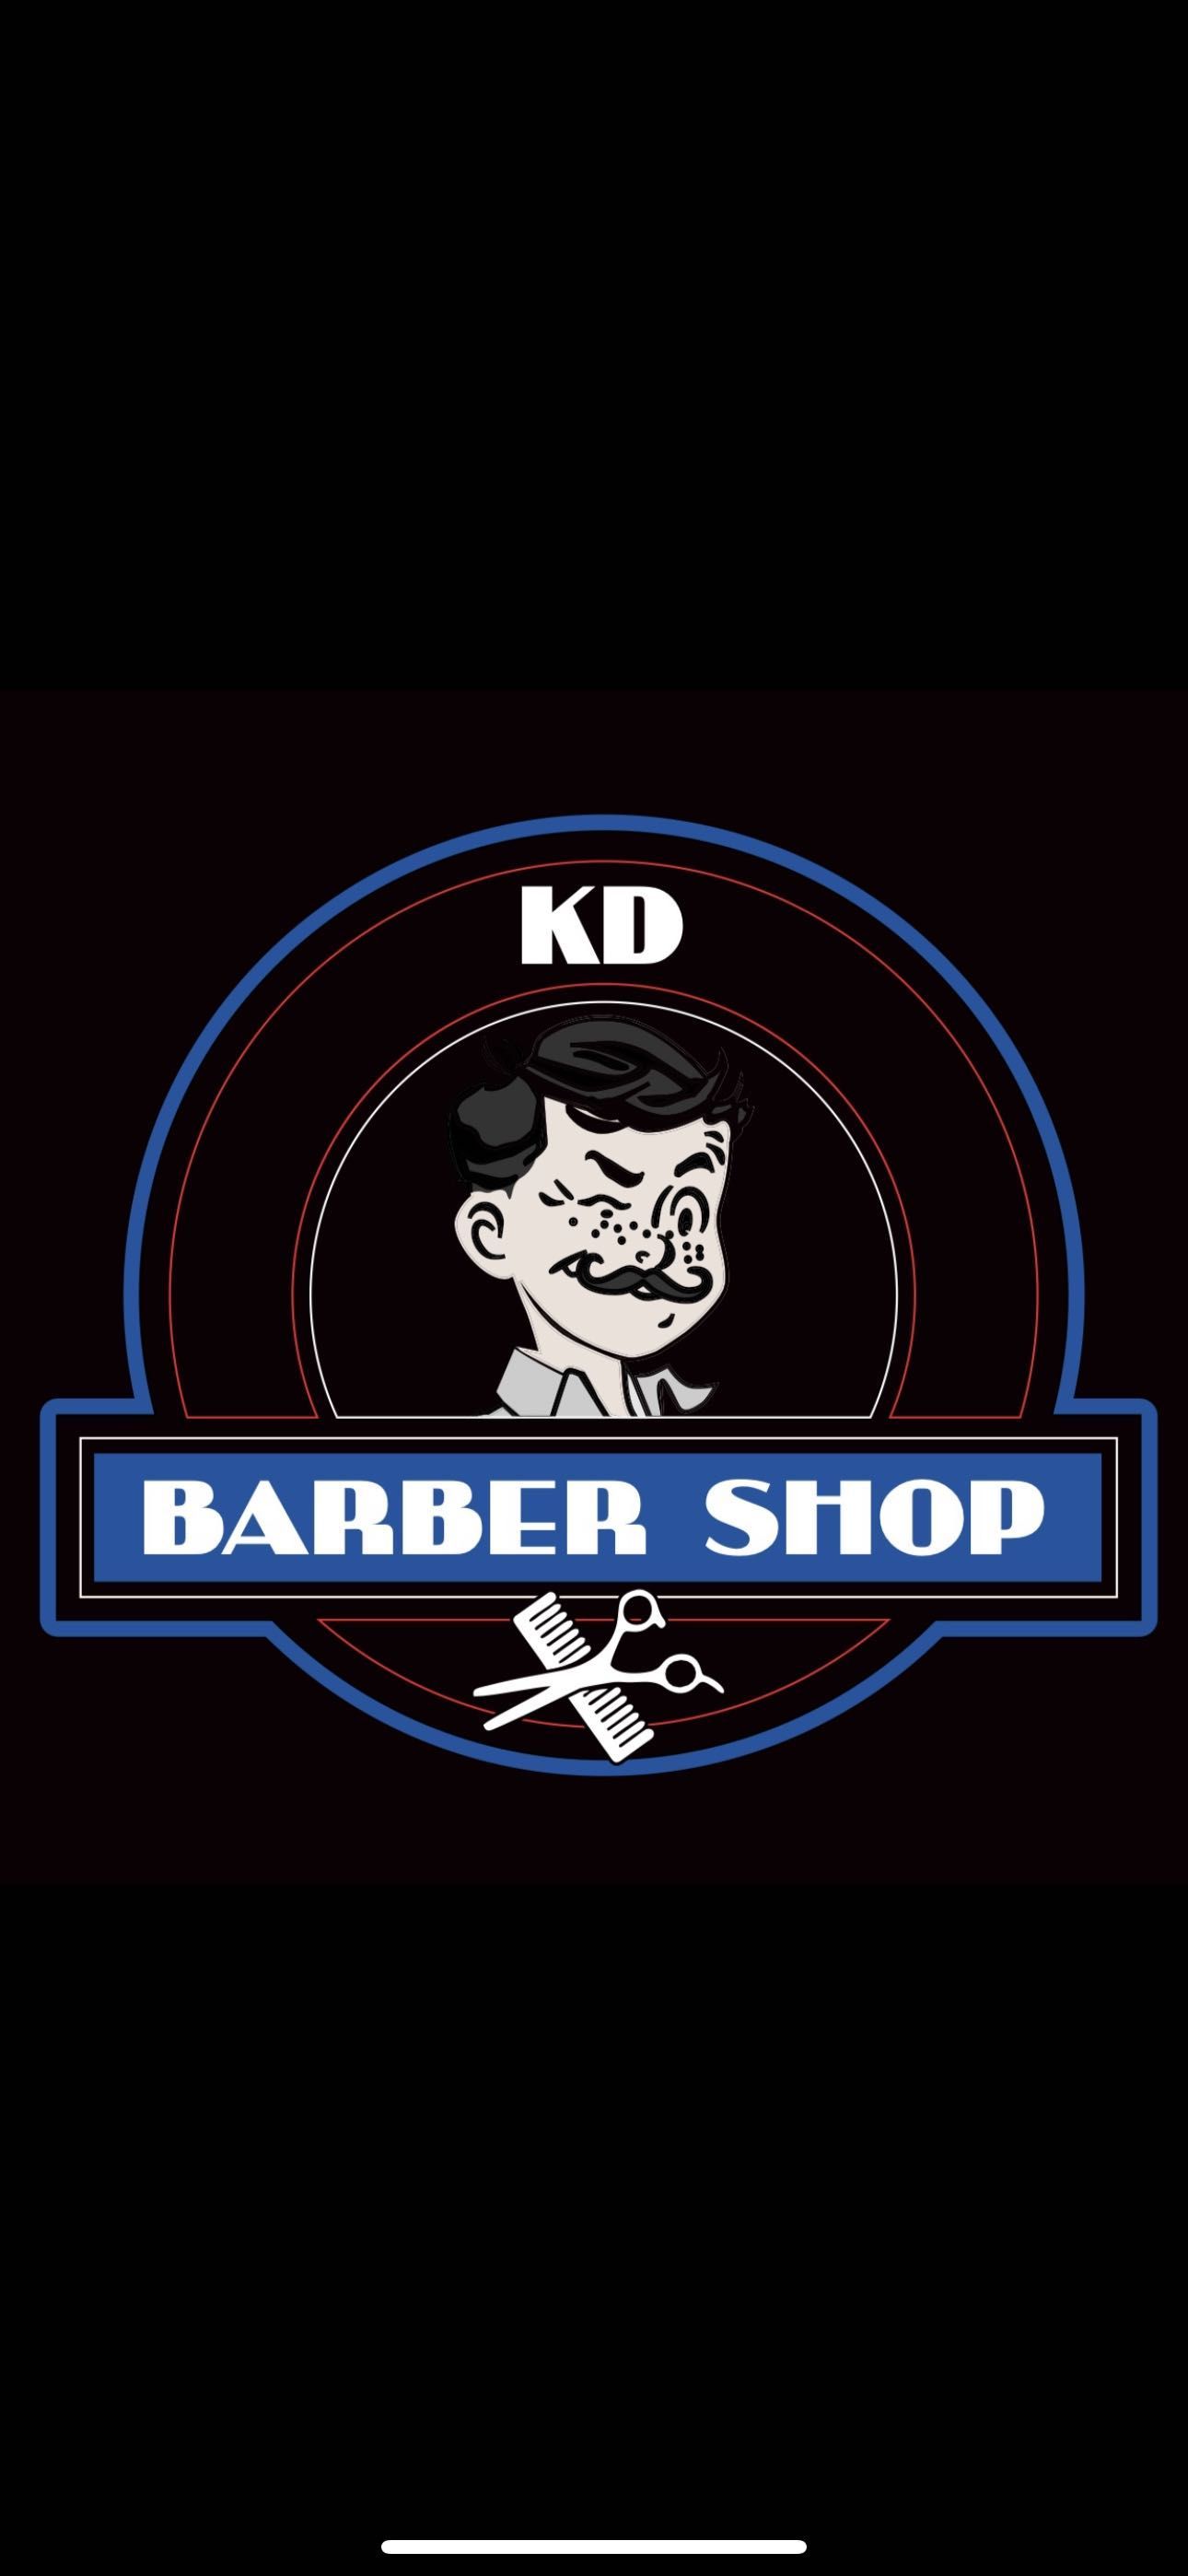 KD Barbershop, 108 W Third St, Elmhurst, 60126